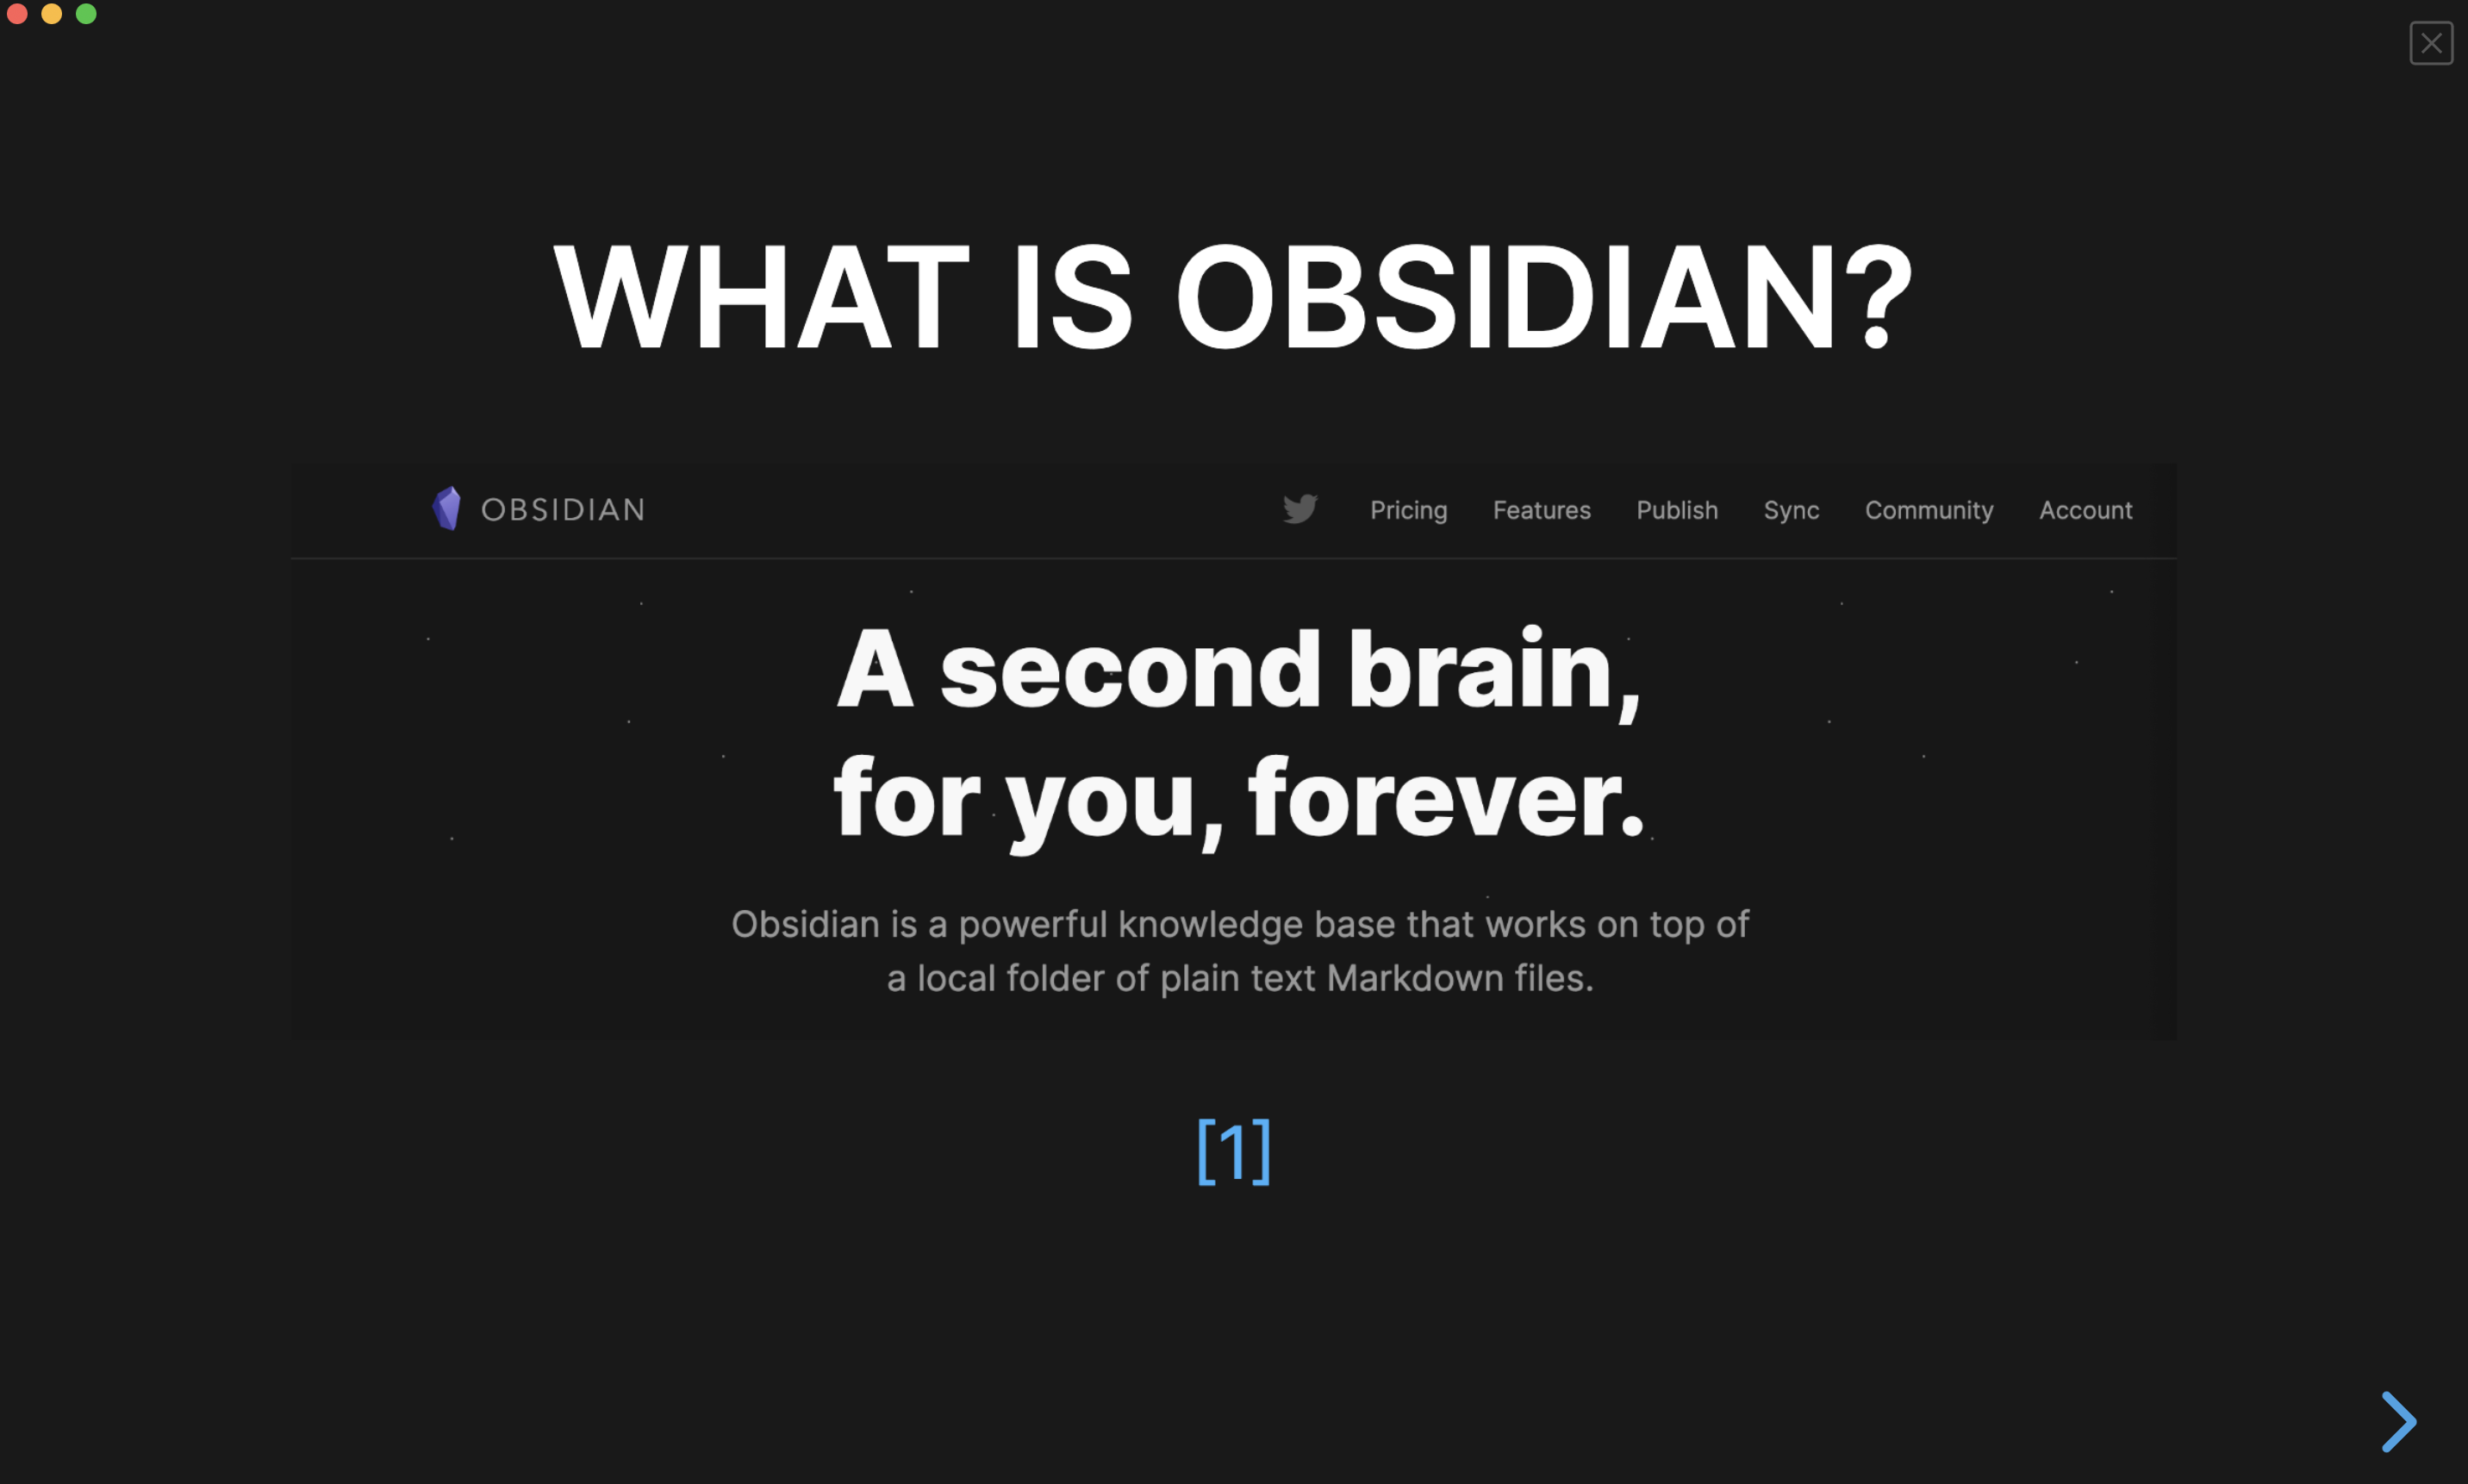 An Obsidian presentation